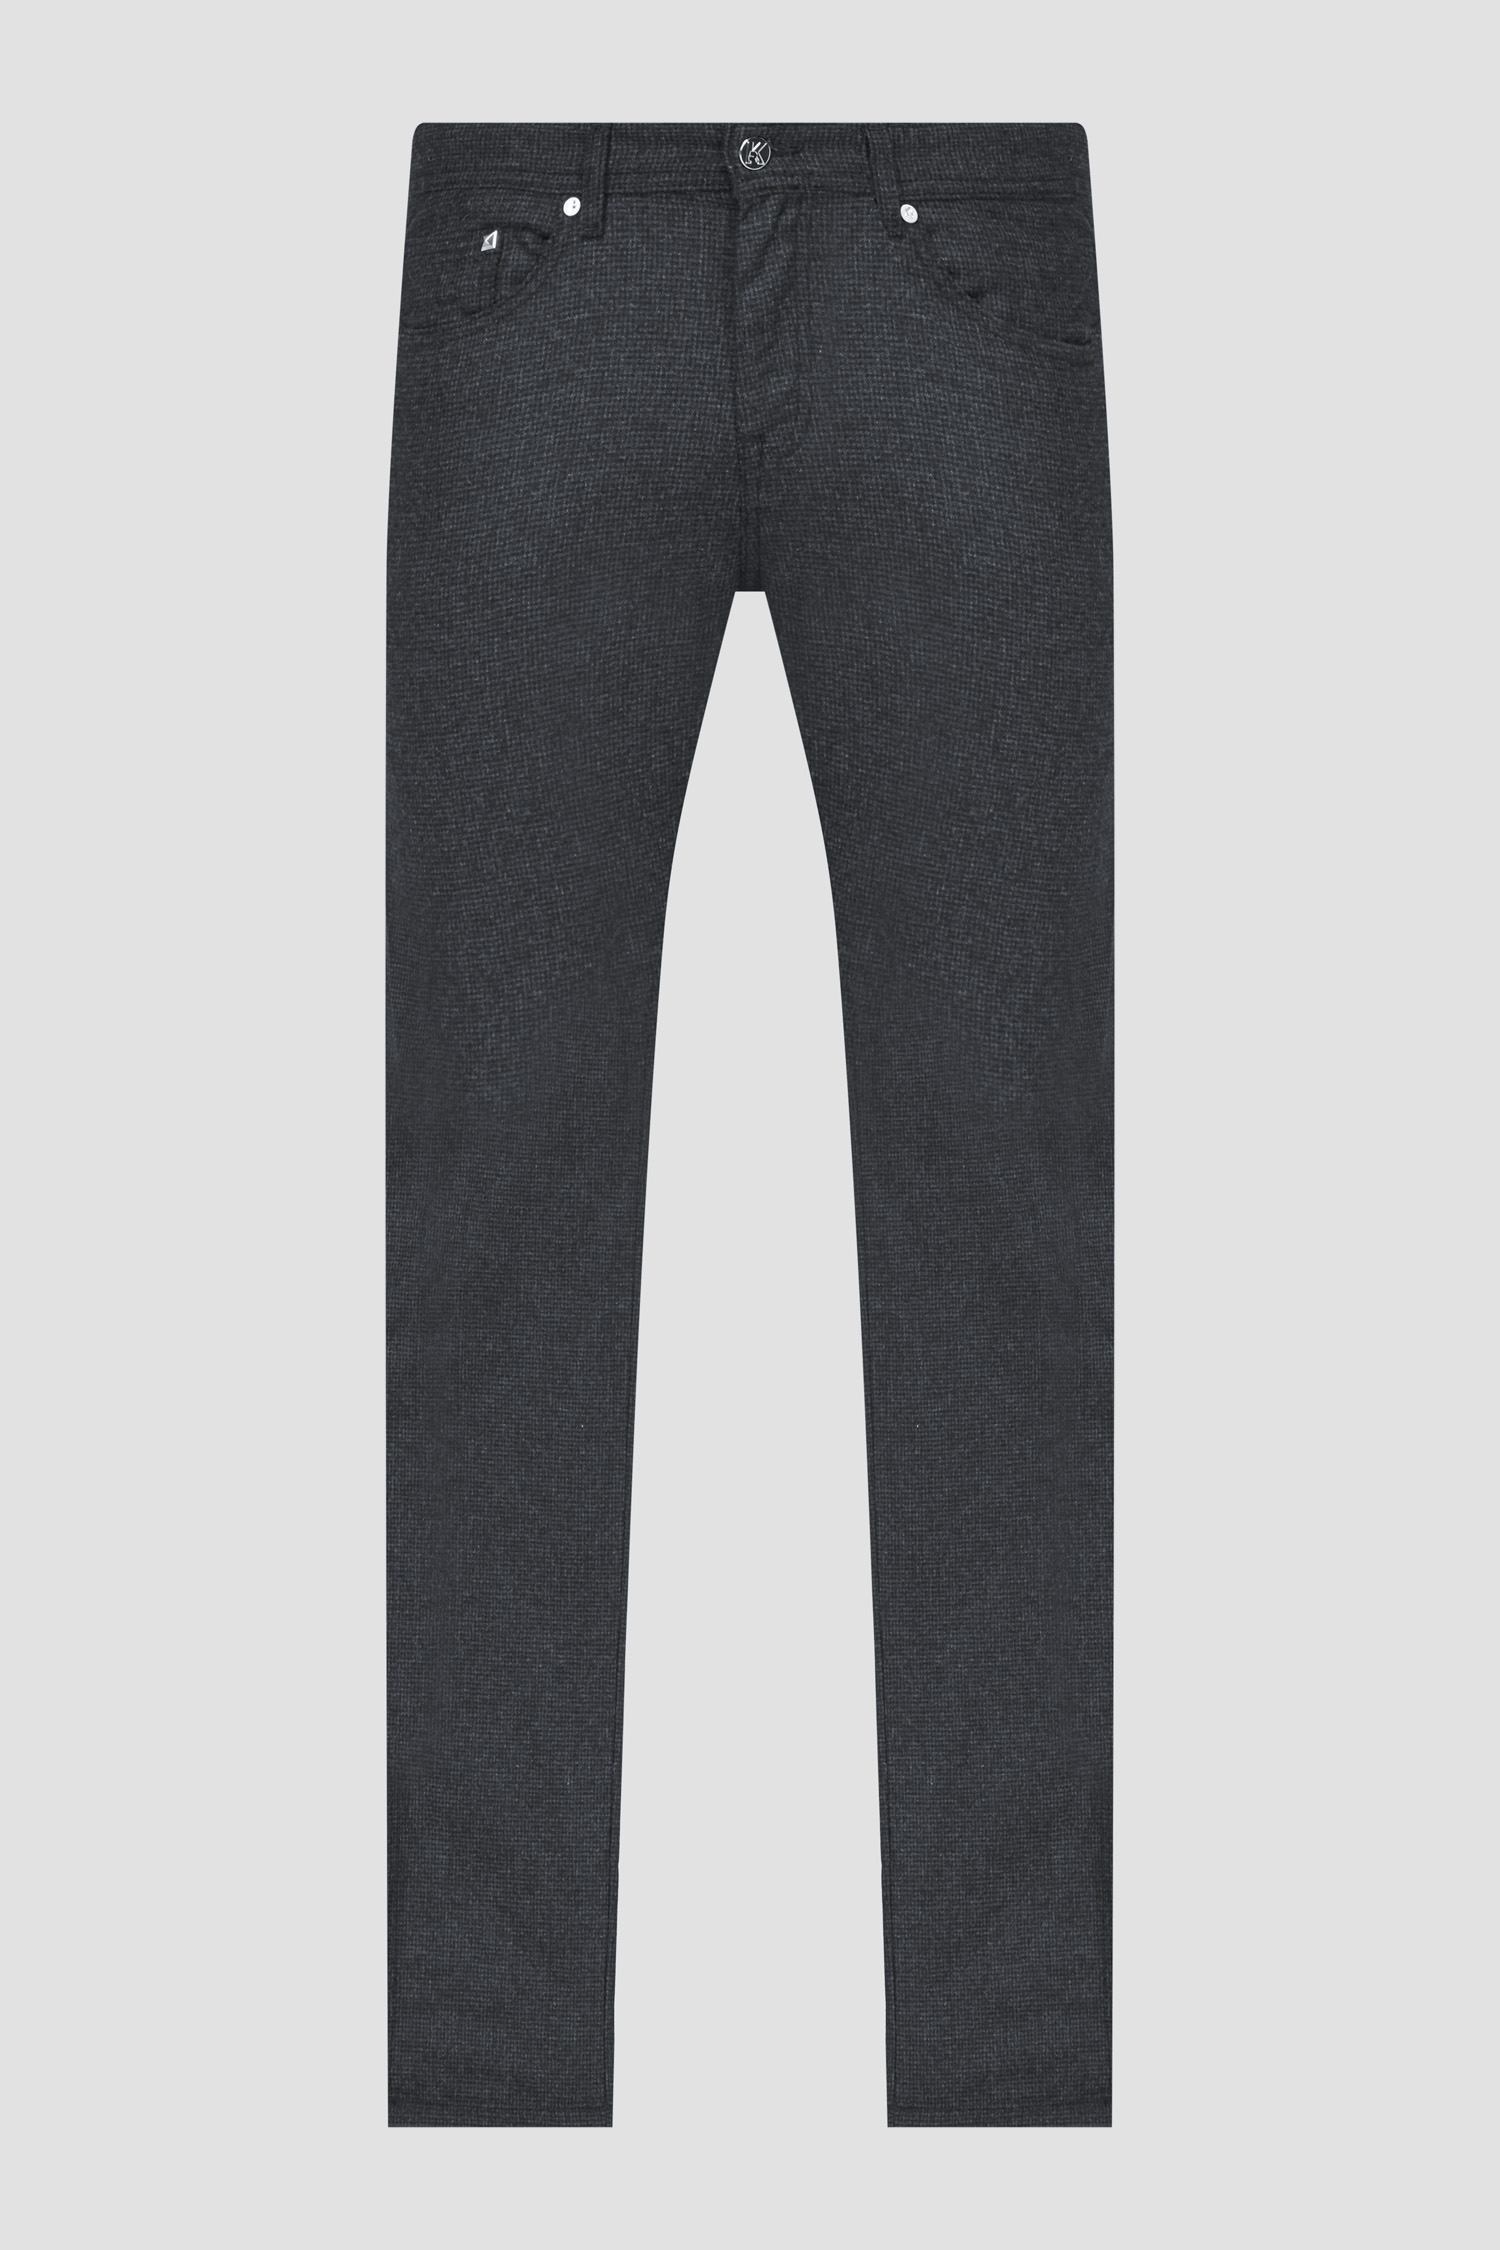 Мужские черные шерстяные брюки Karl Lagerfeld 534805.265840;990